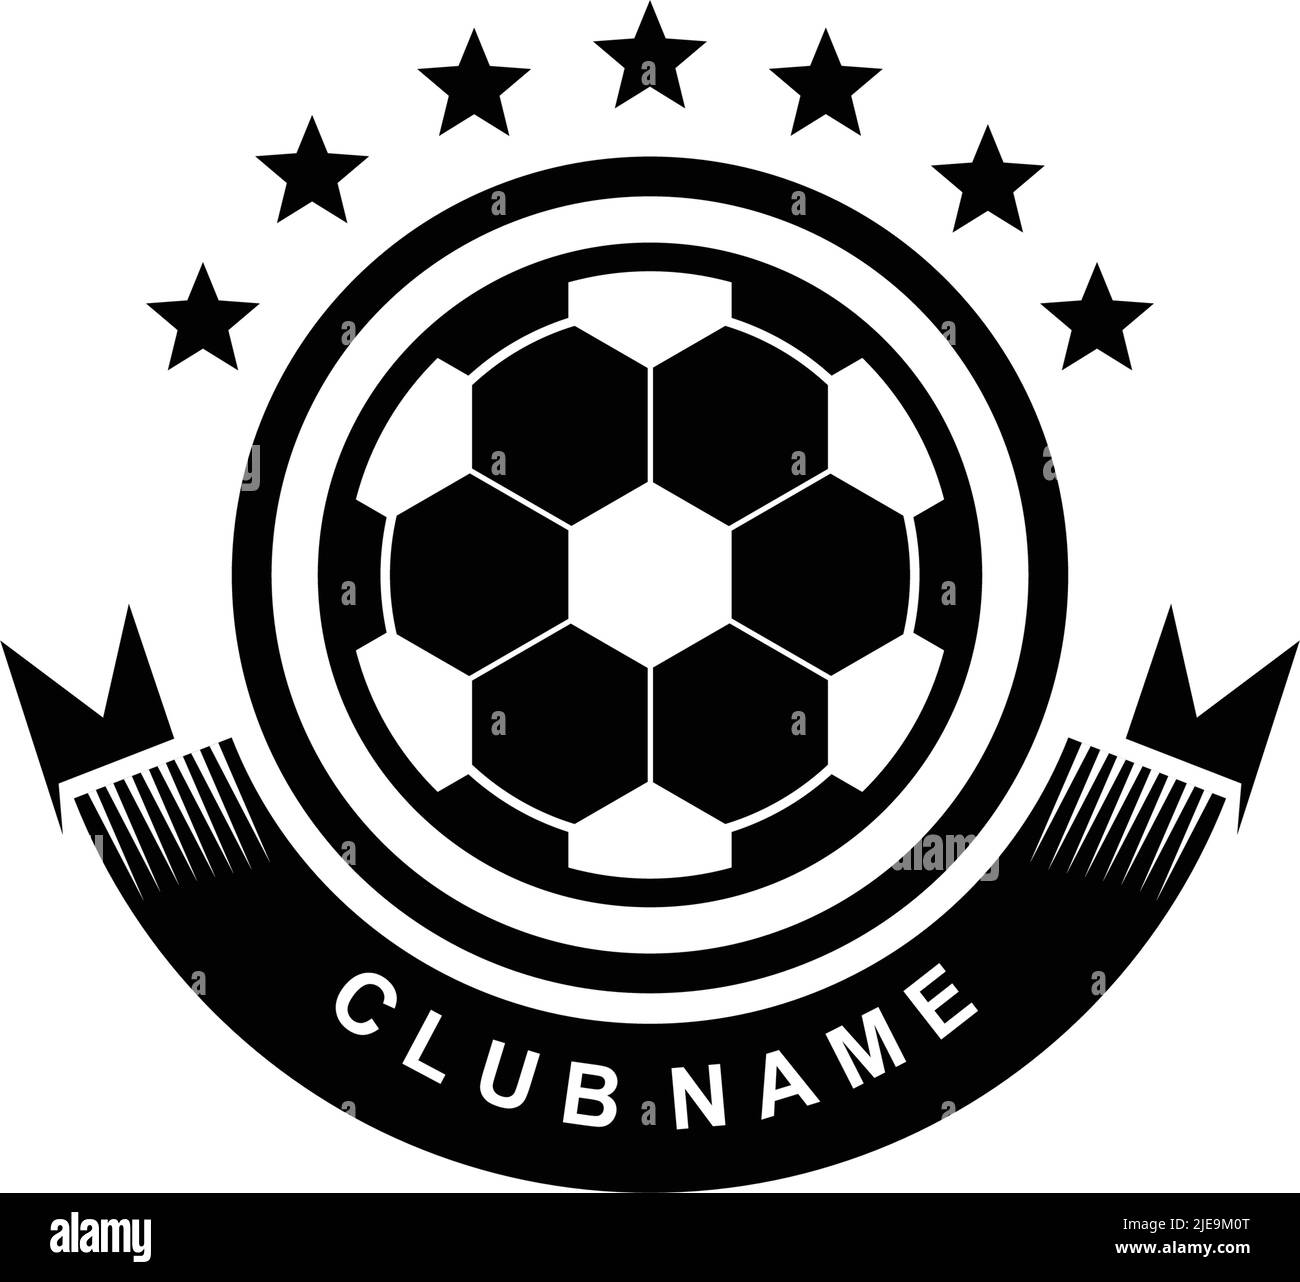 Share more than 73 football academy logo super hot - ceg.edu.vn